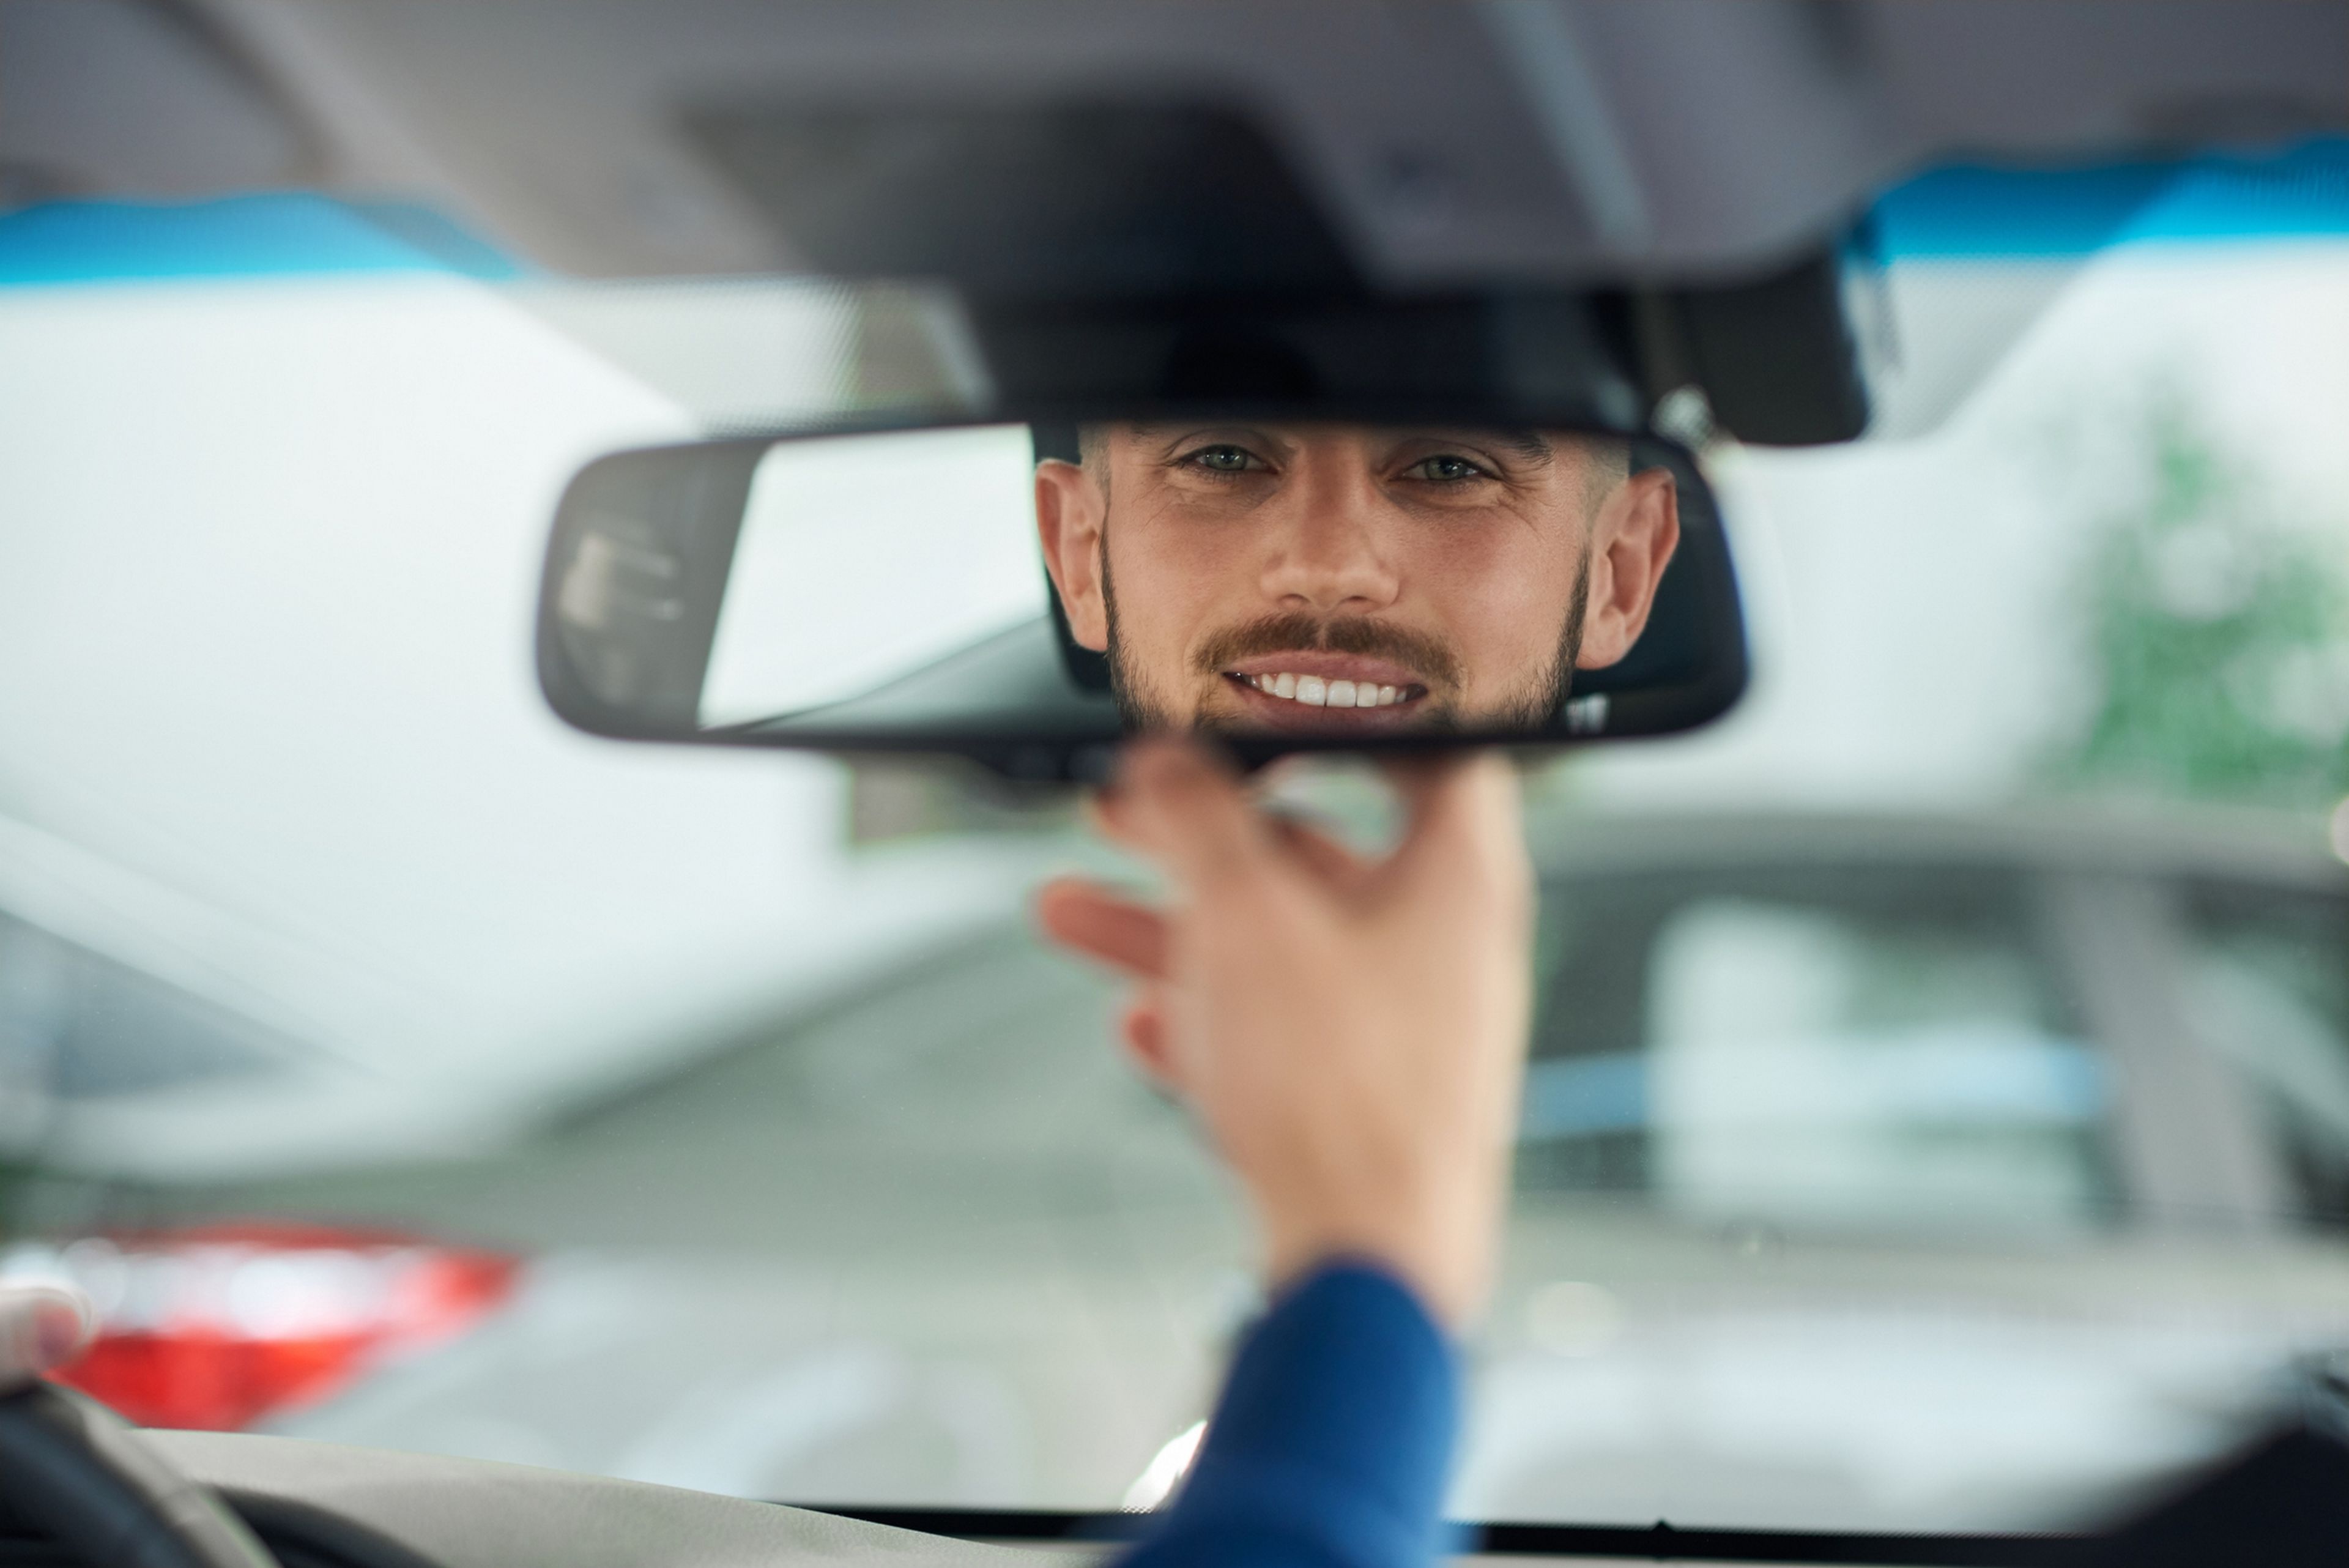 Водитель смотрит в зеркало. В зеркале машины мужчина.